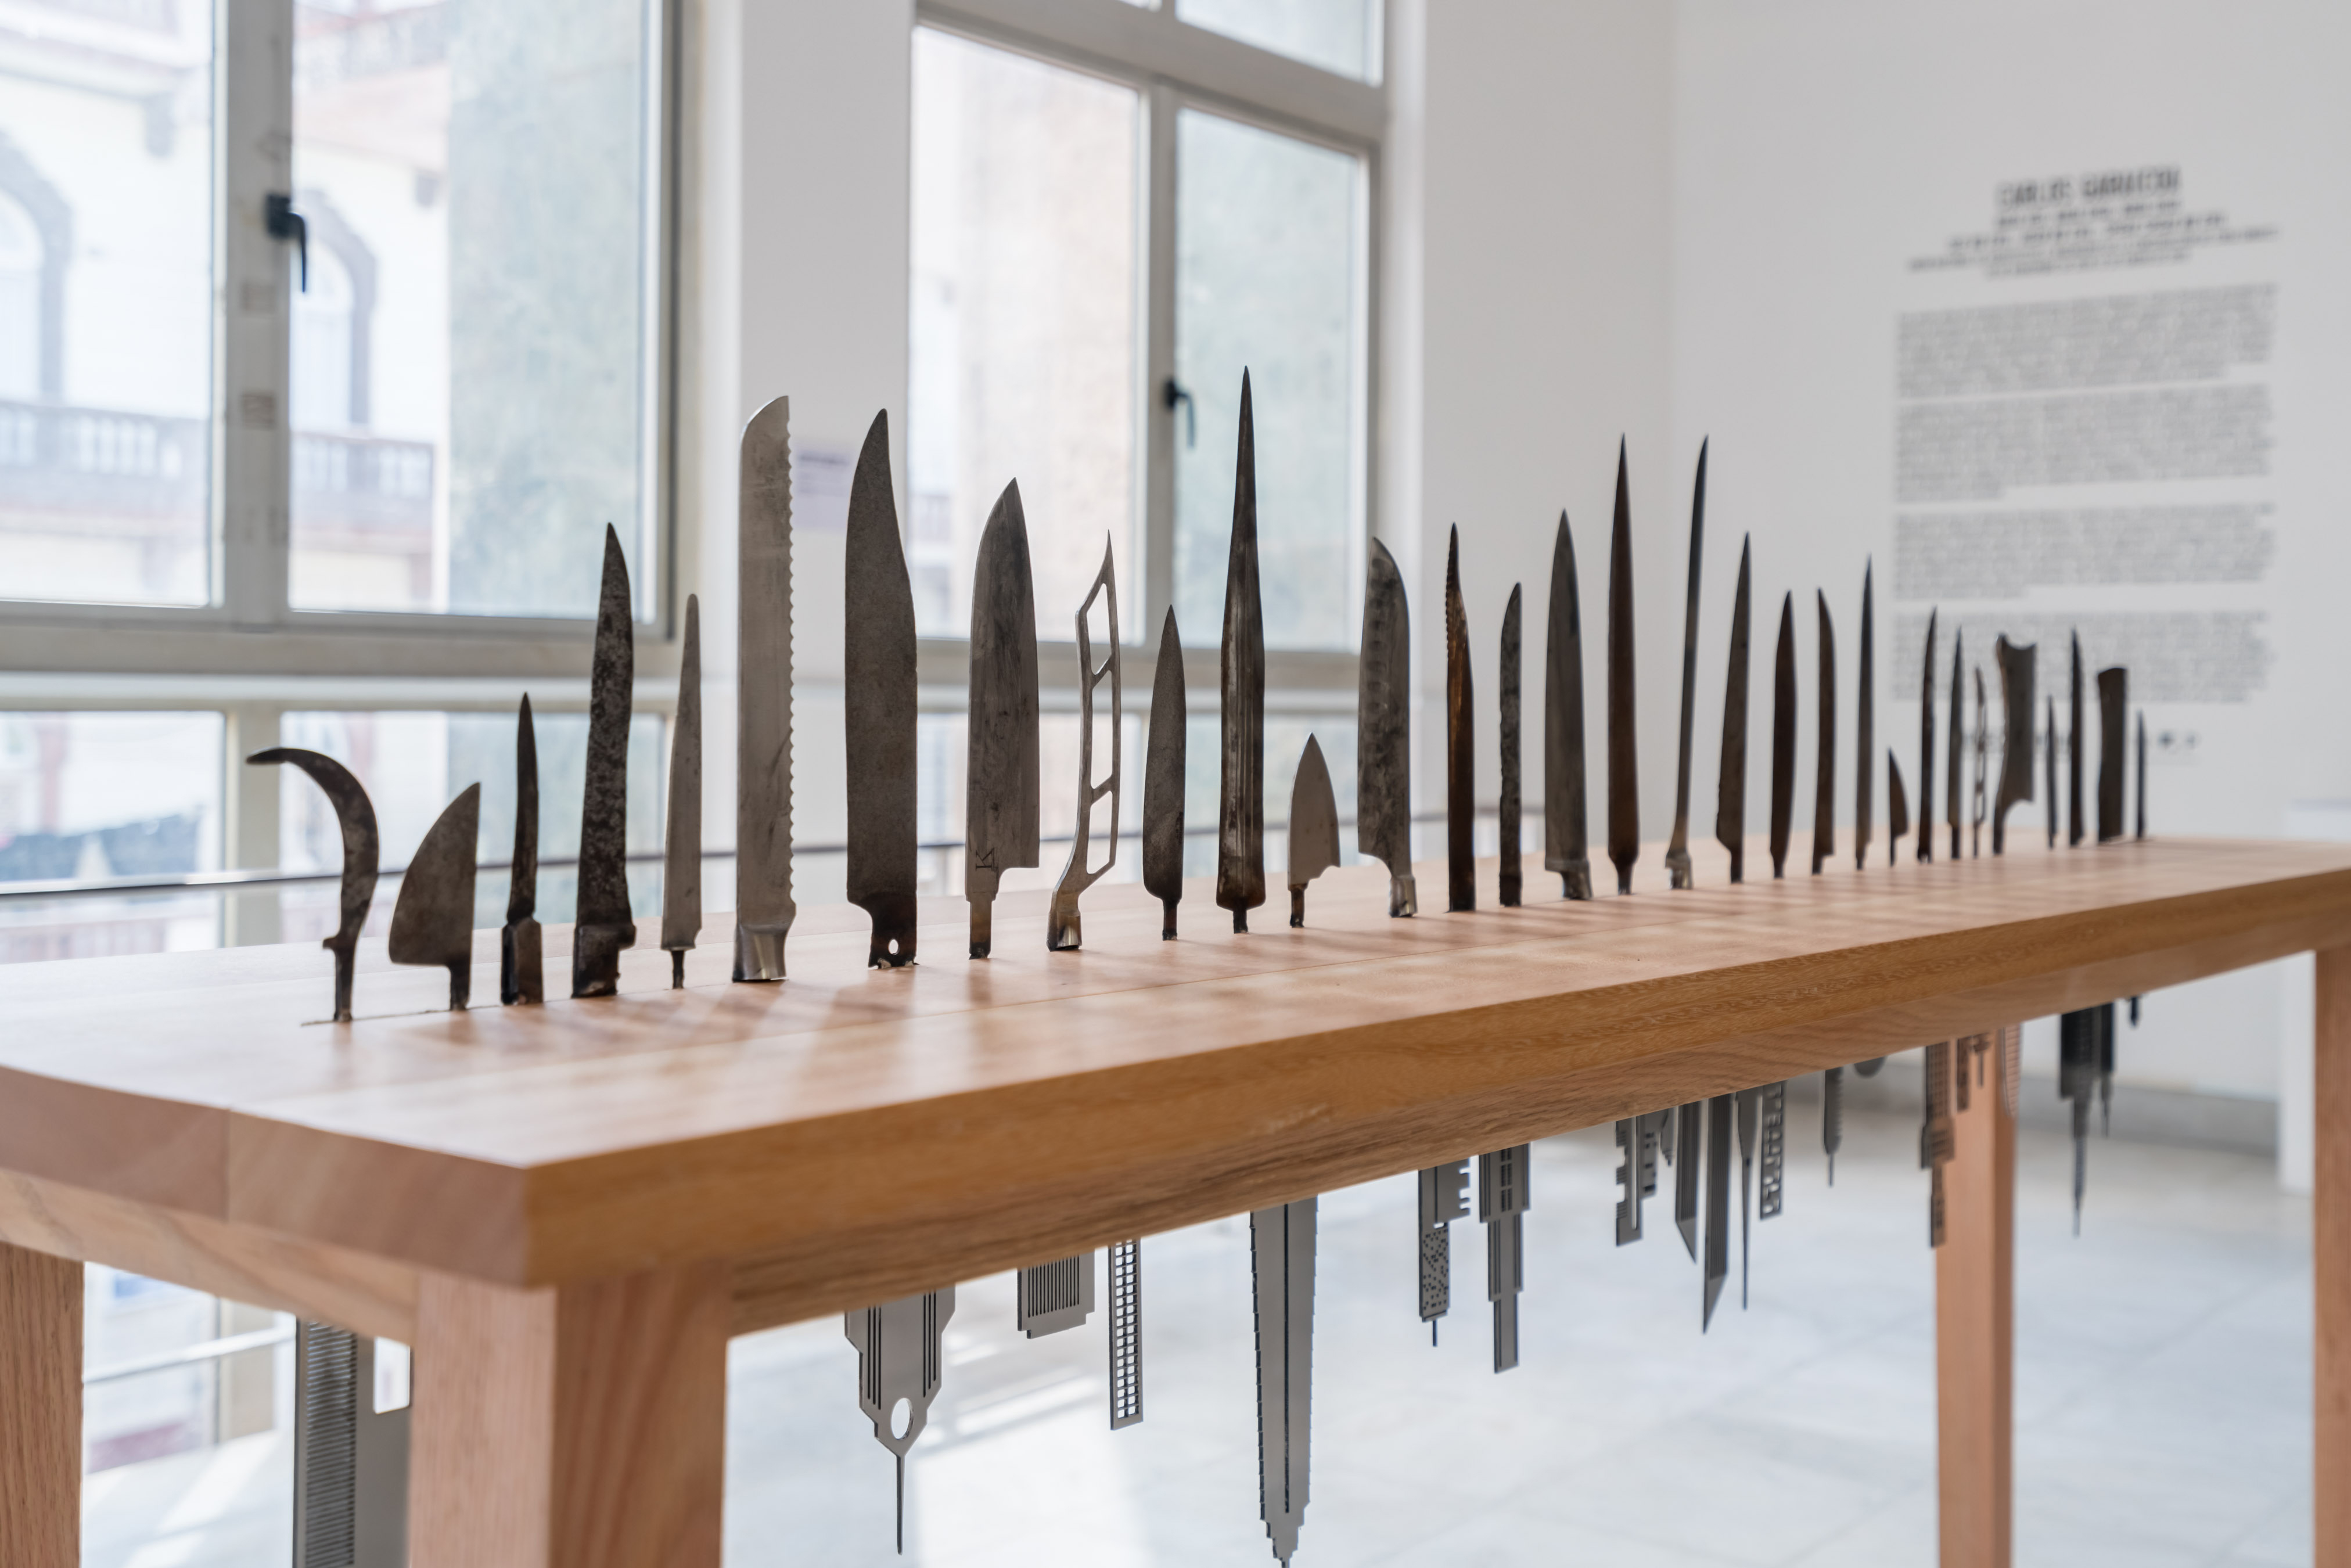 Carlos Garaicoa Las Raíces del Mundo, 2018 inox steel buildings, knives Courtesy Galleria Continua